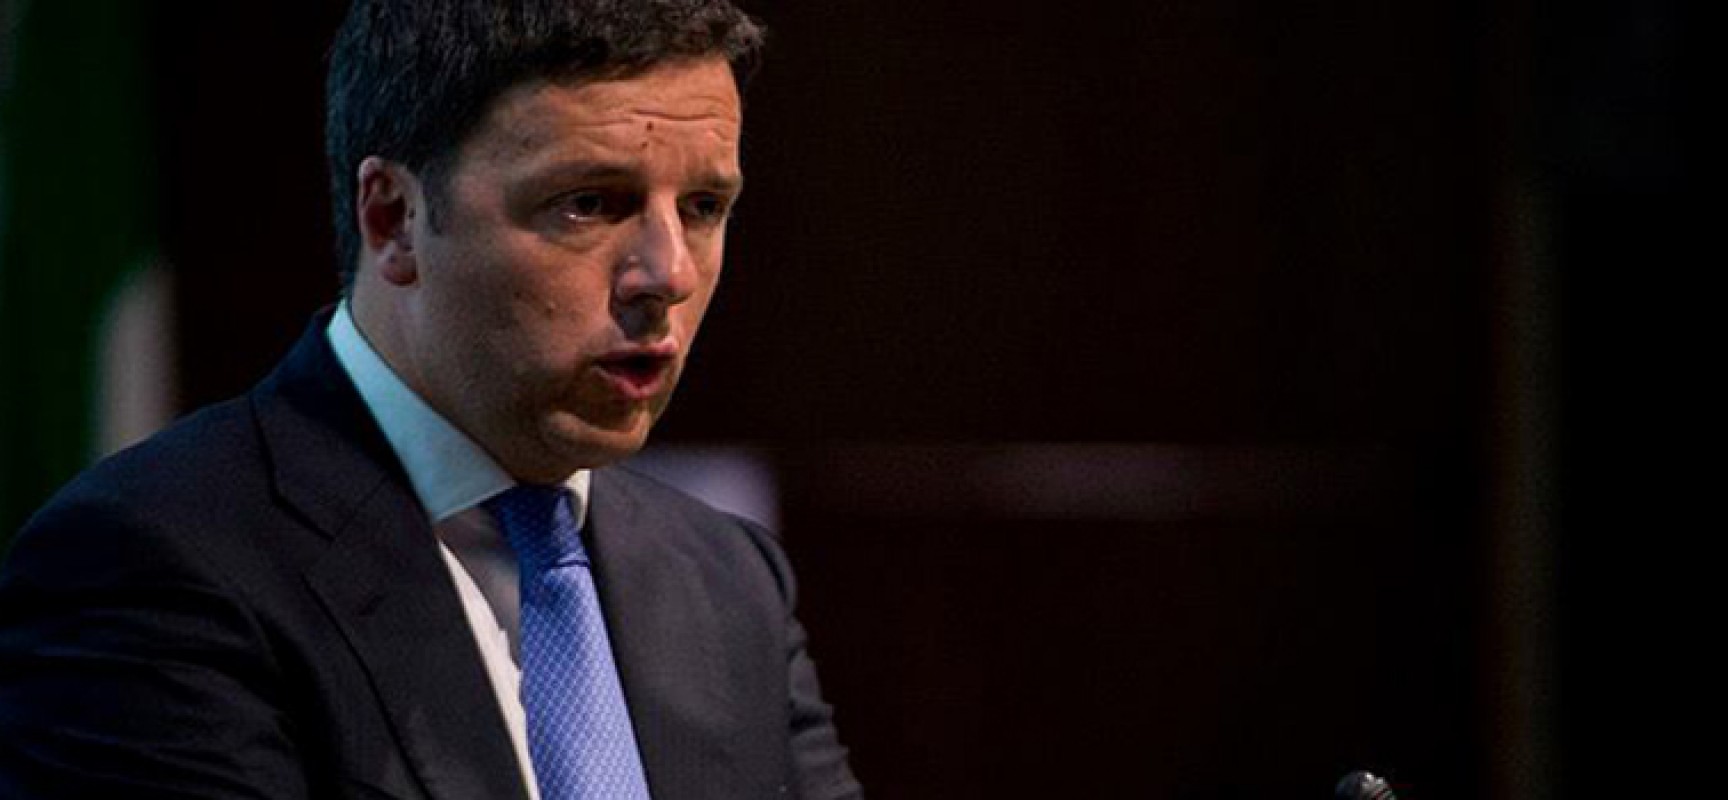 Spina-Pd, interviene Matteo Renzi: “400 iscritti in blocco? Non è giusto, lecito e legittimo”